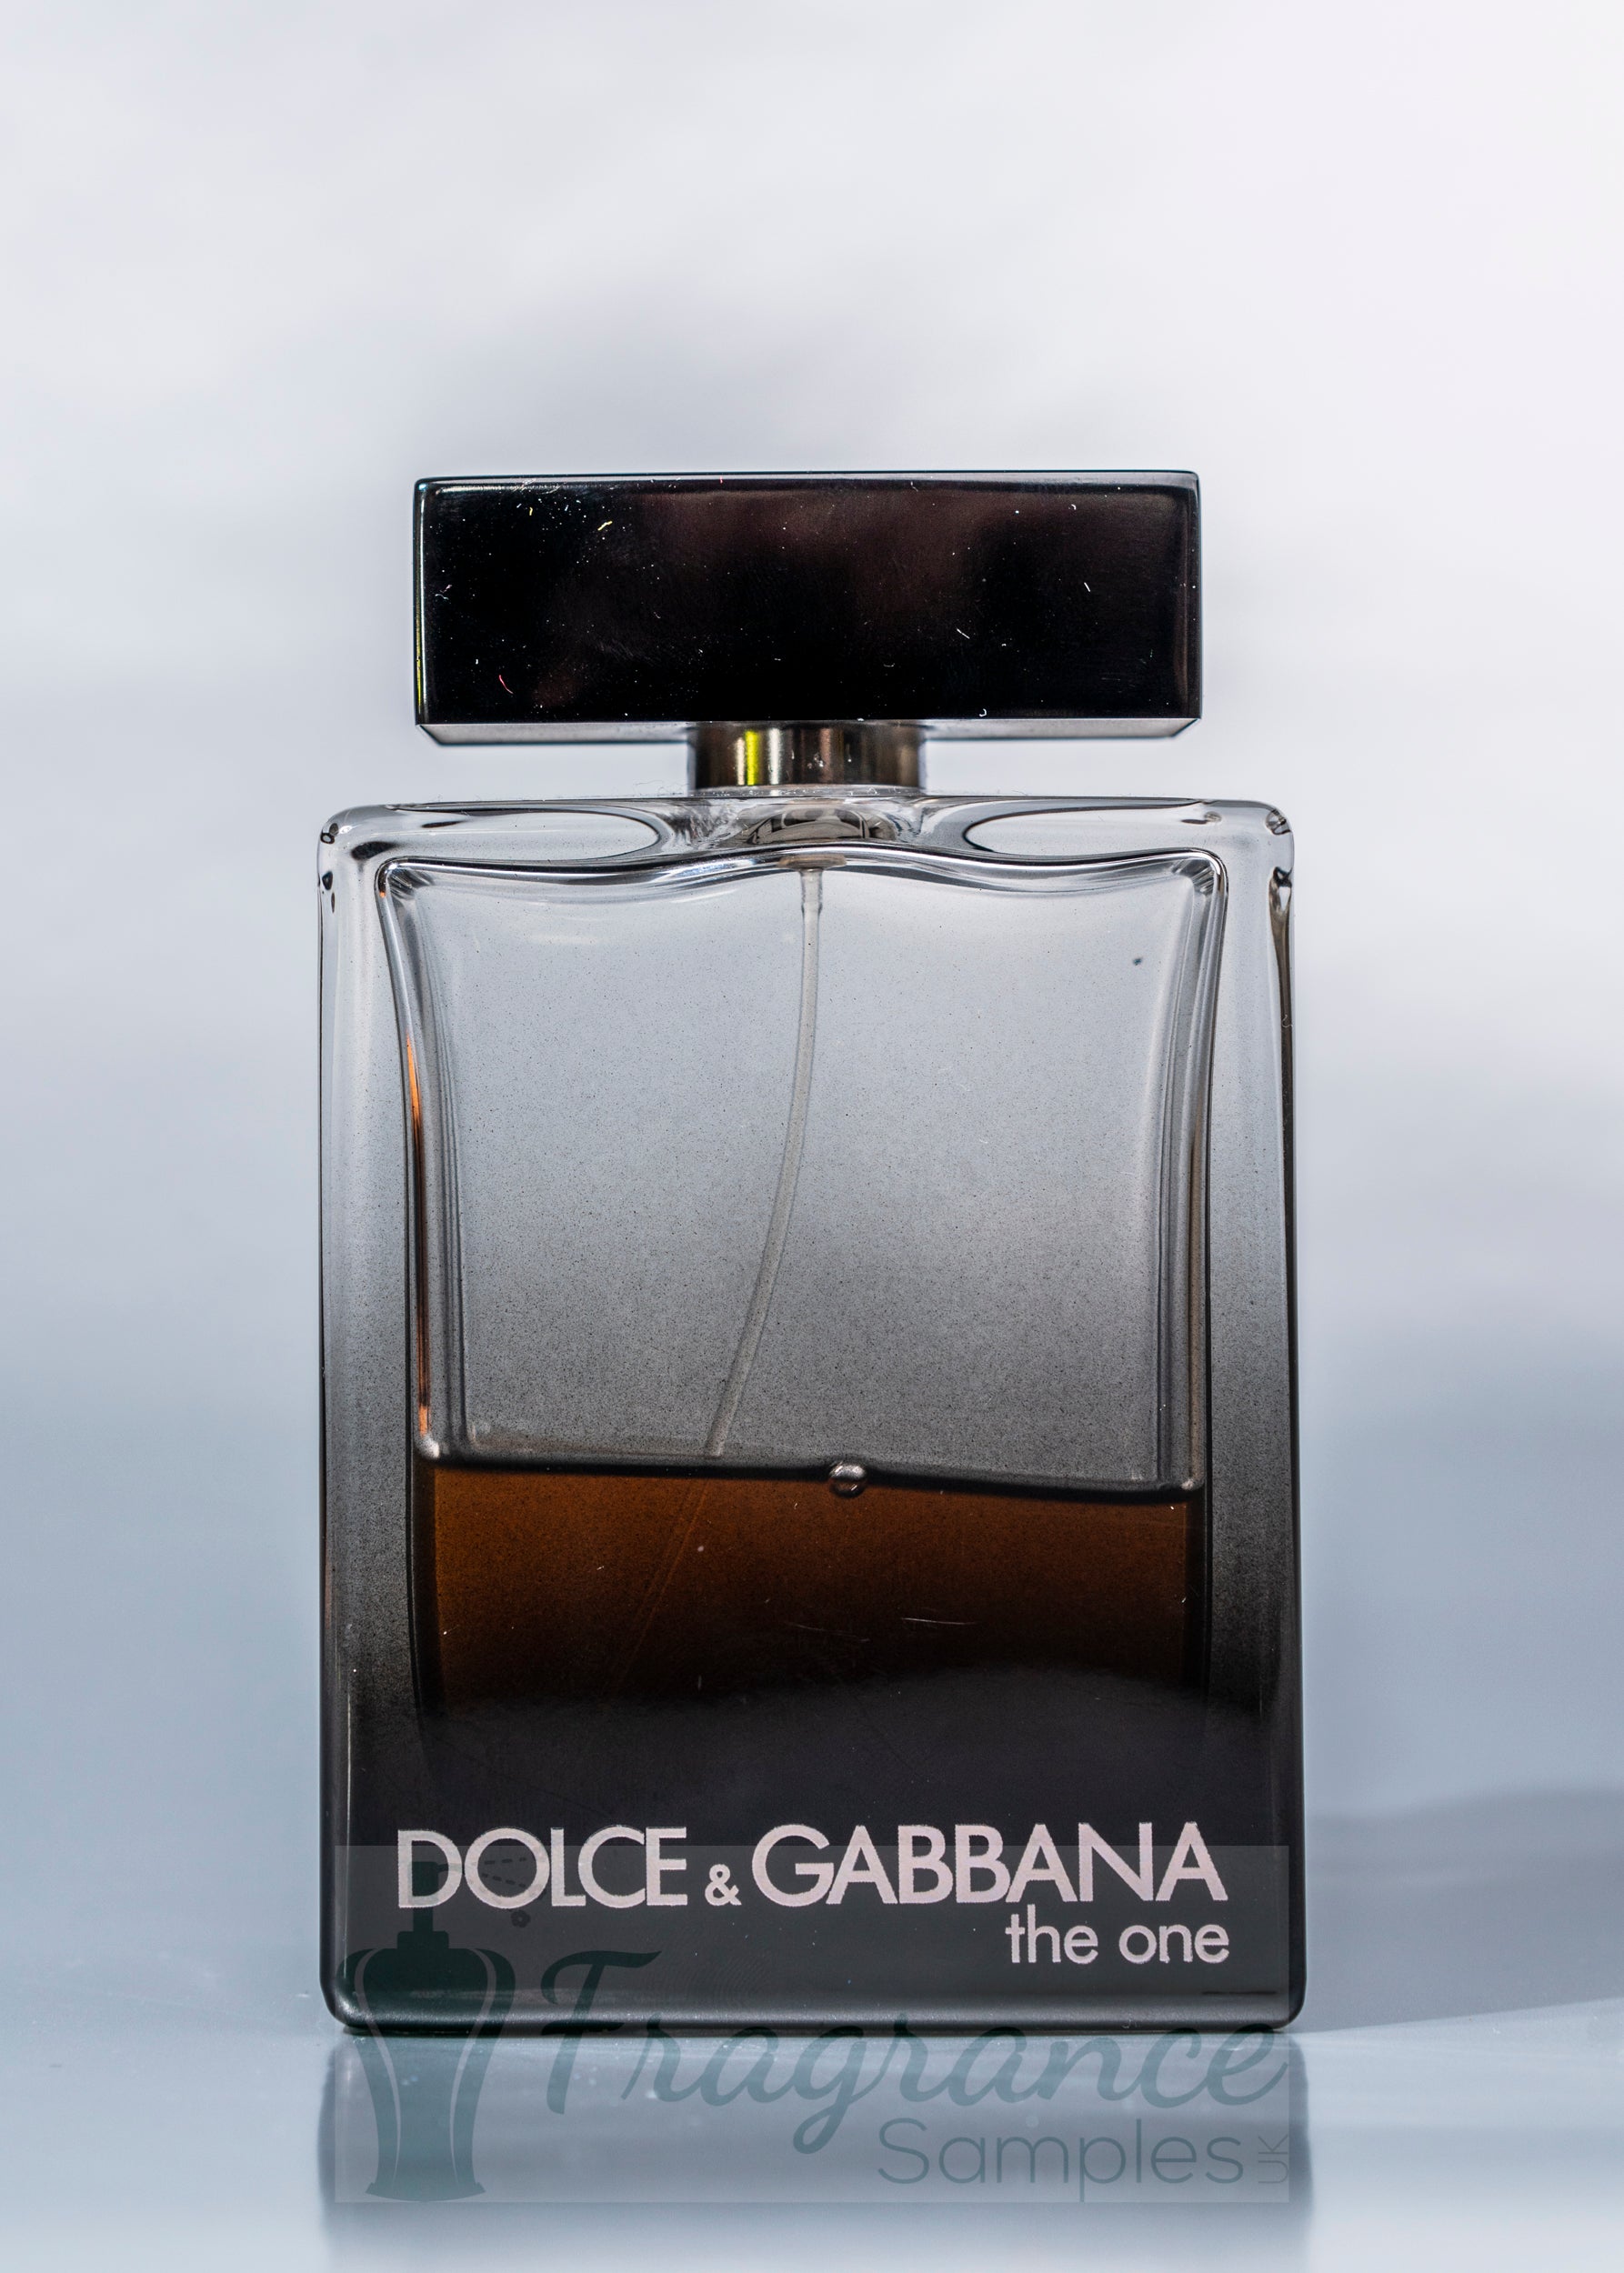 Dolce & Gabbana The One For Men EDP – Fragrance Samples UK